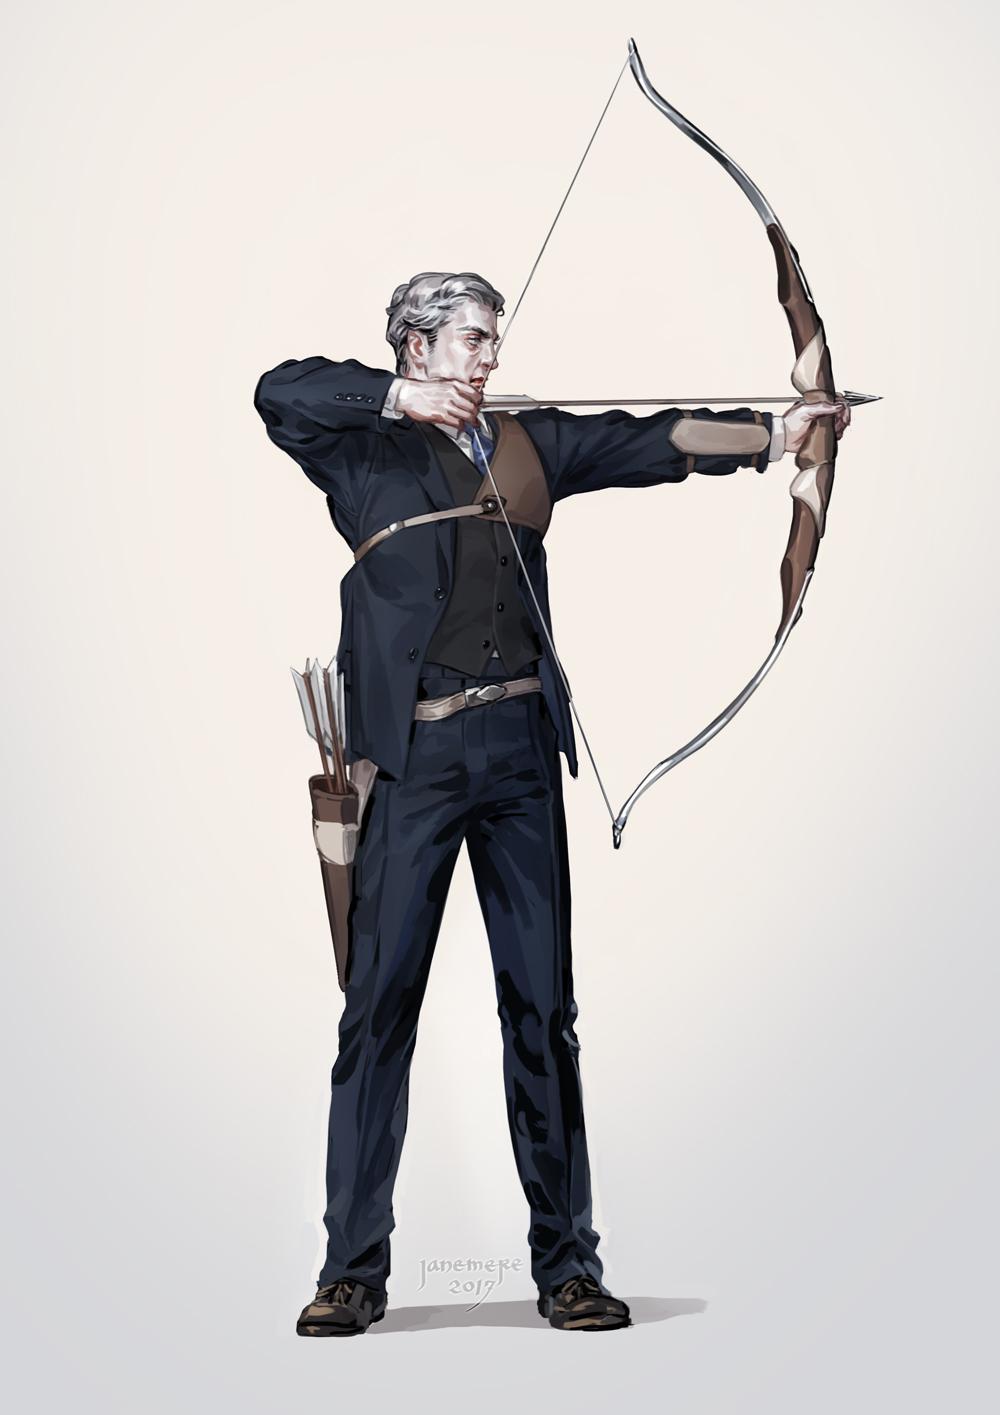 Archer插画图片壁纸